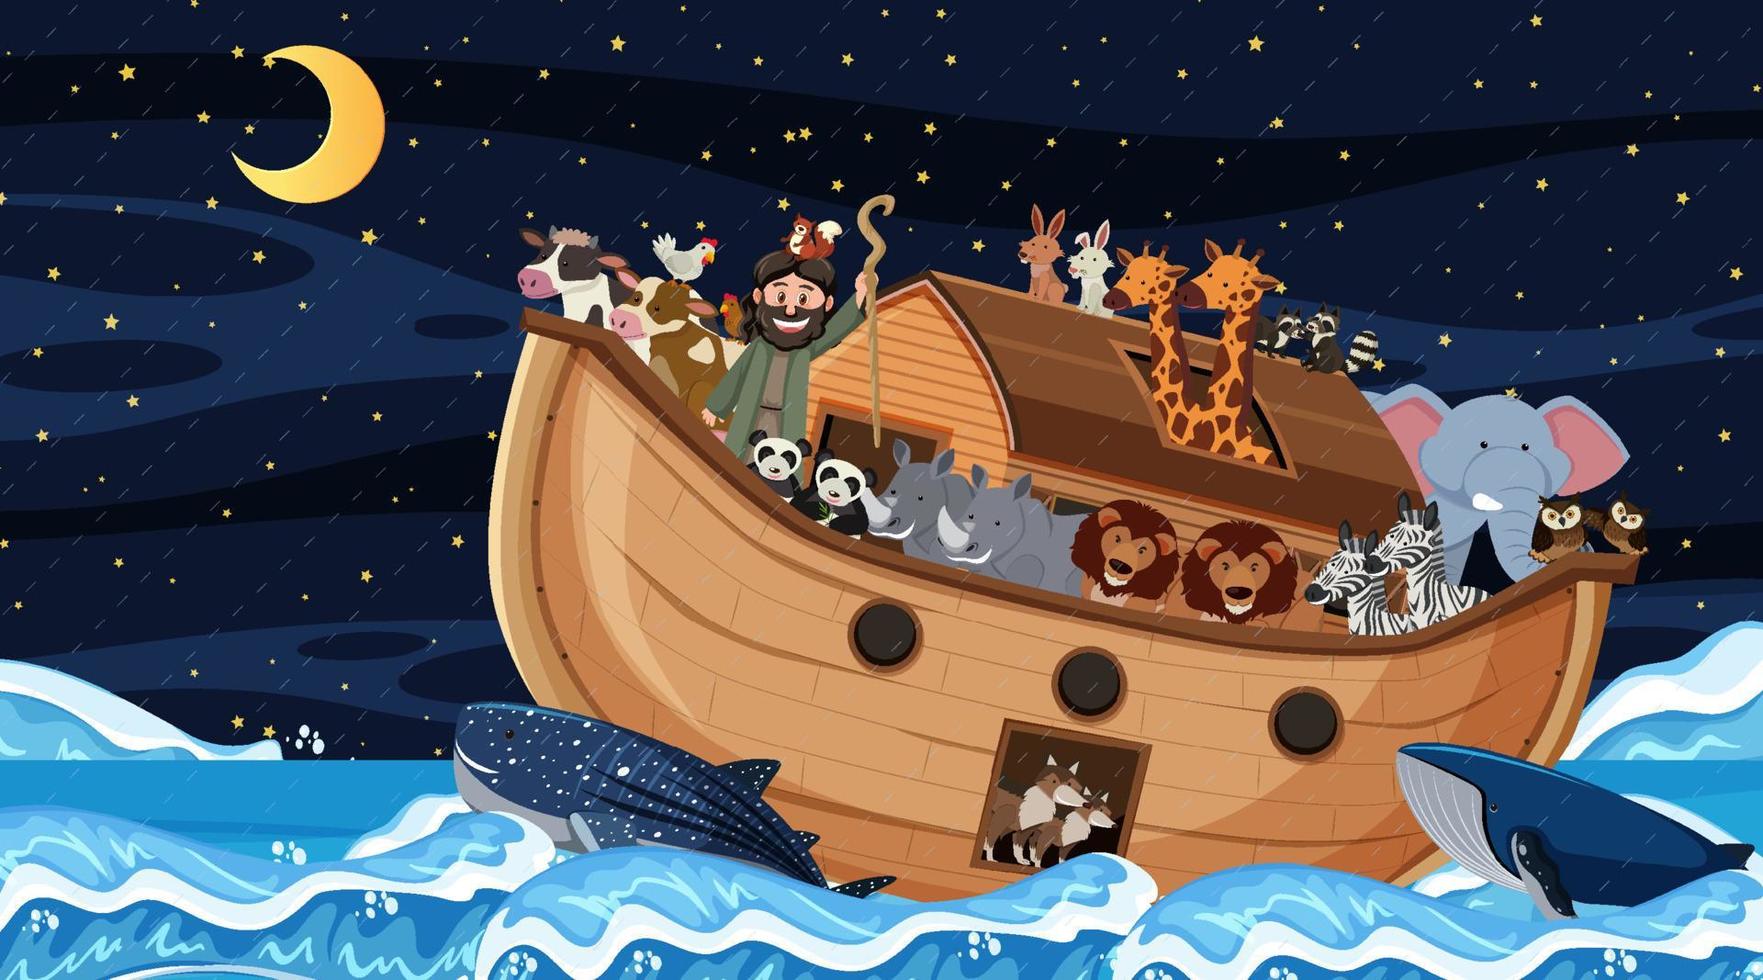 escena del océano con el arca de noé con animales vector